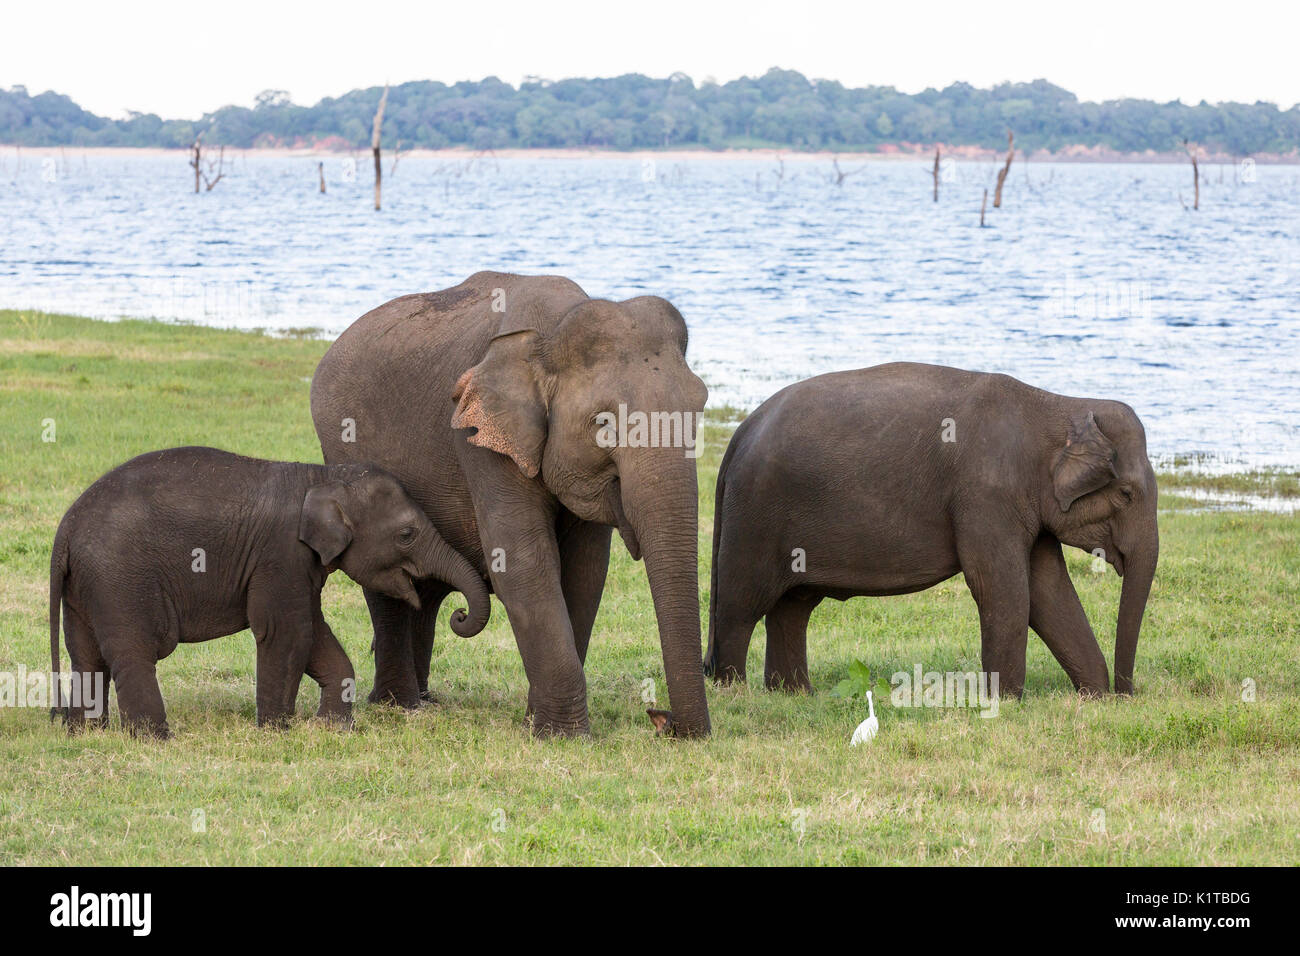 Les éléphants d'Asie Profitez des espaces ouverts de la Parc National de Kaudulla en fin d'après-midi la lumière. Banque D'Images